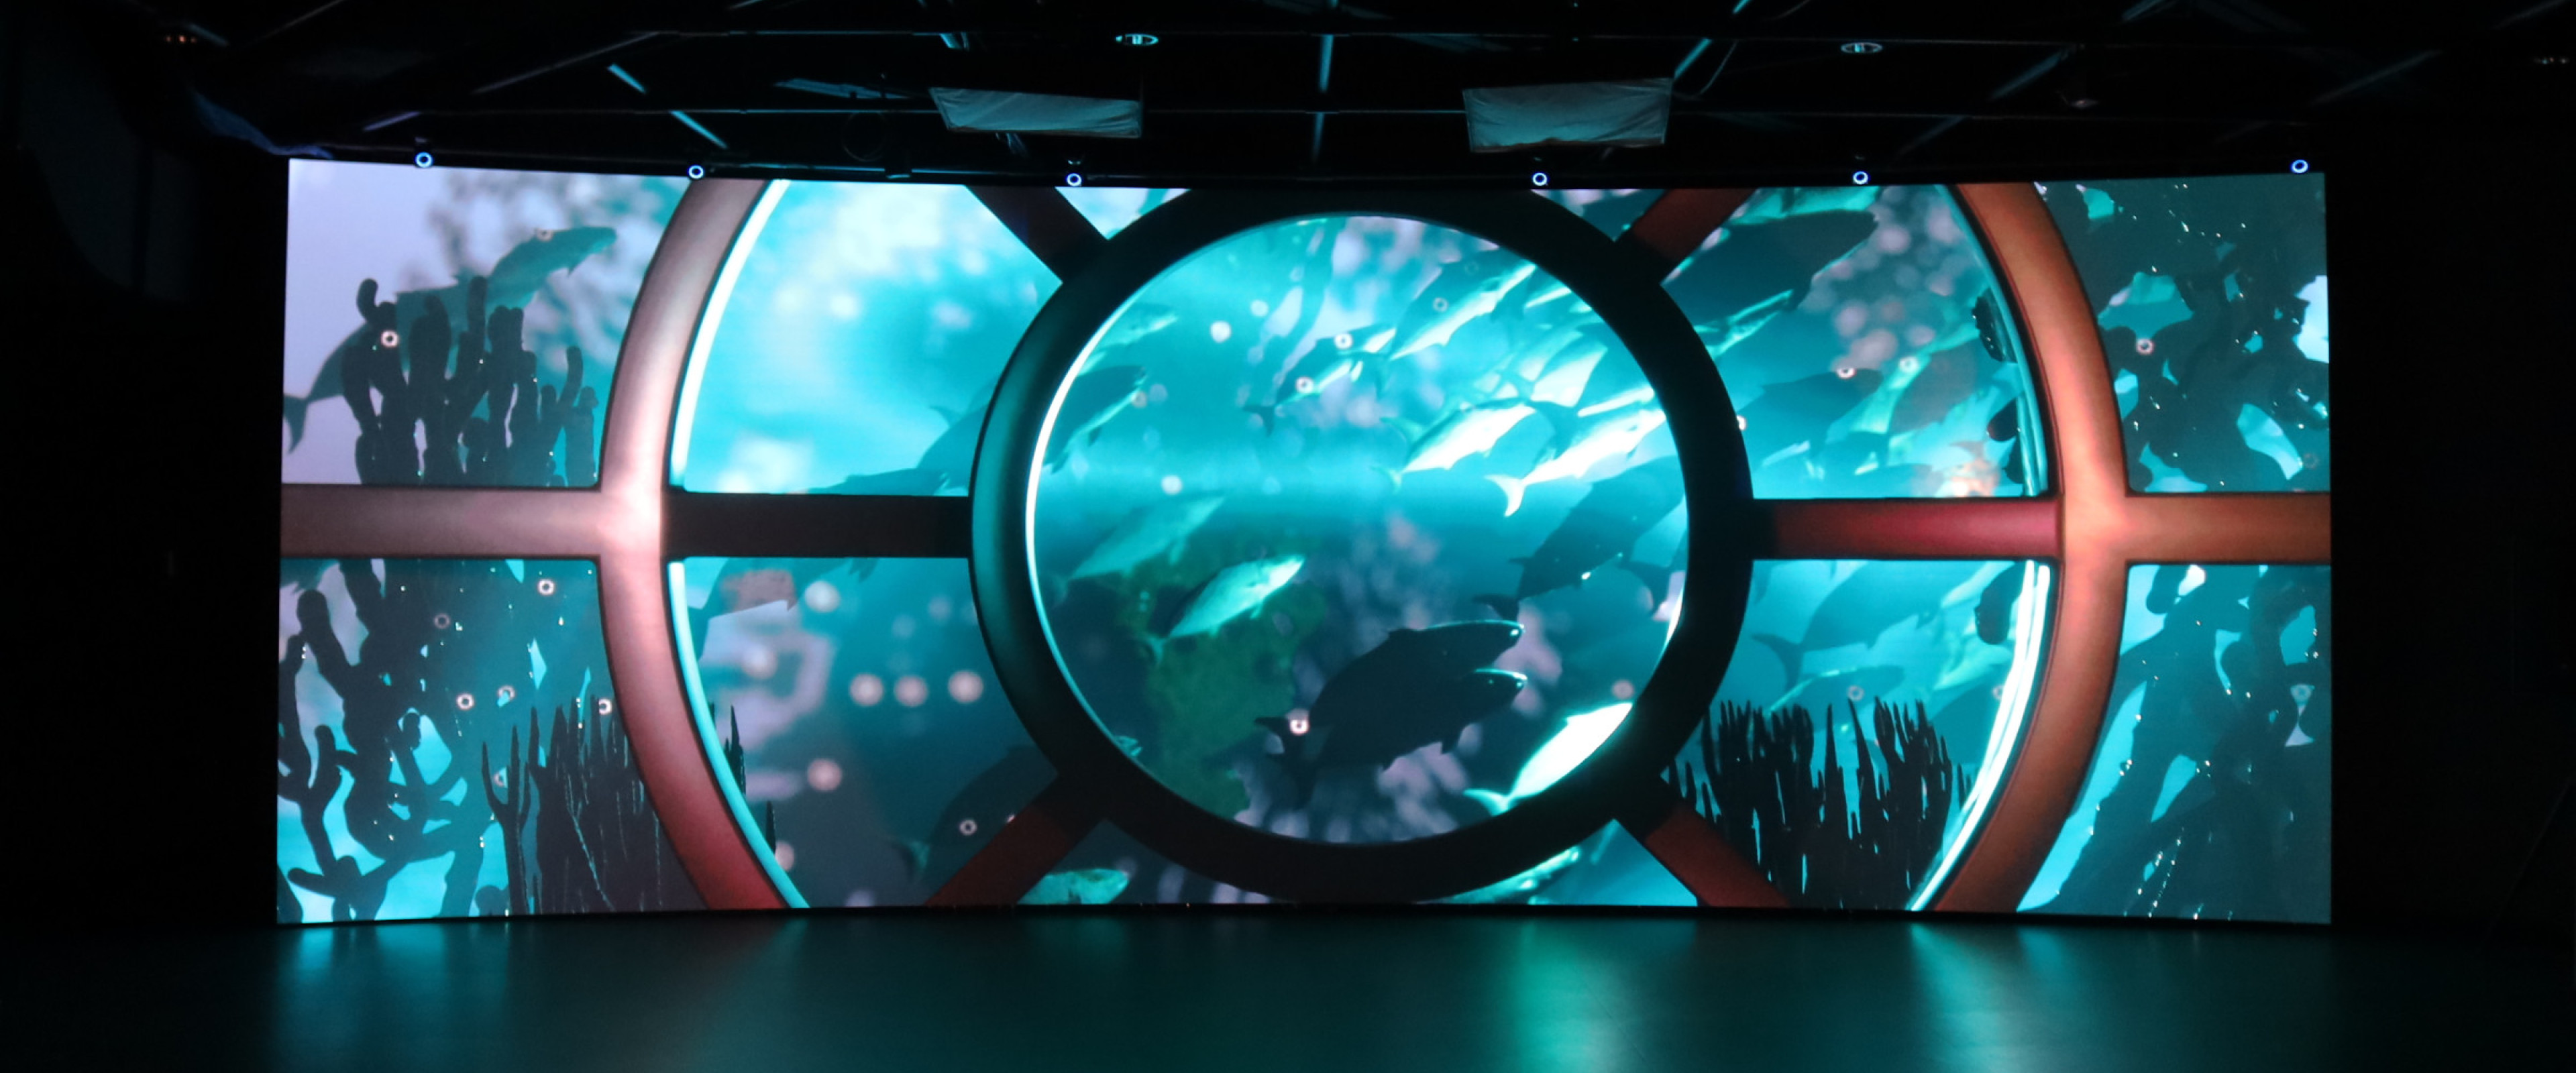 3D Aquarium scene on LED wall.